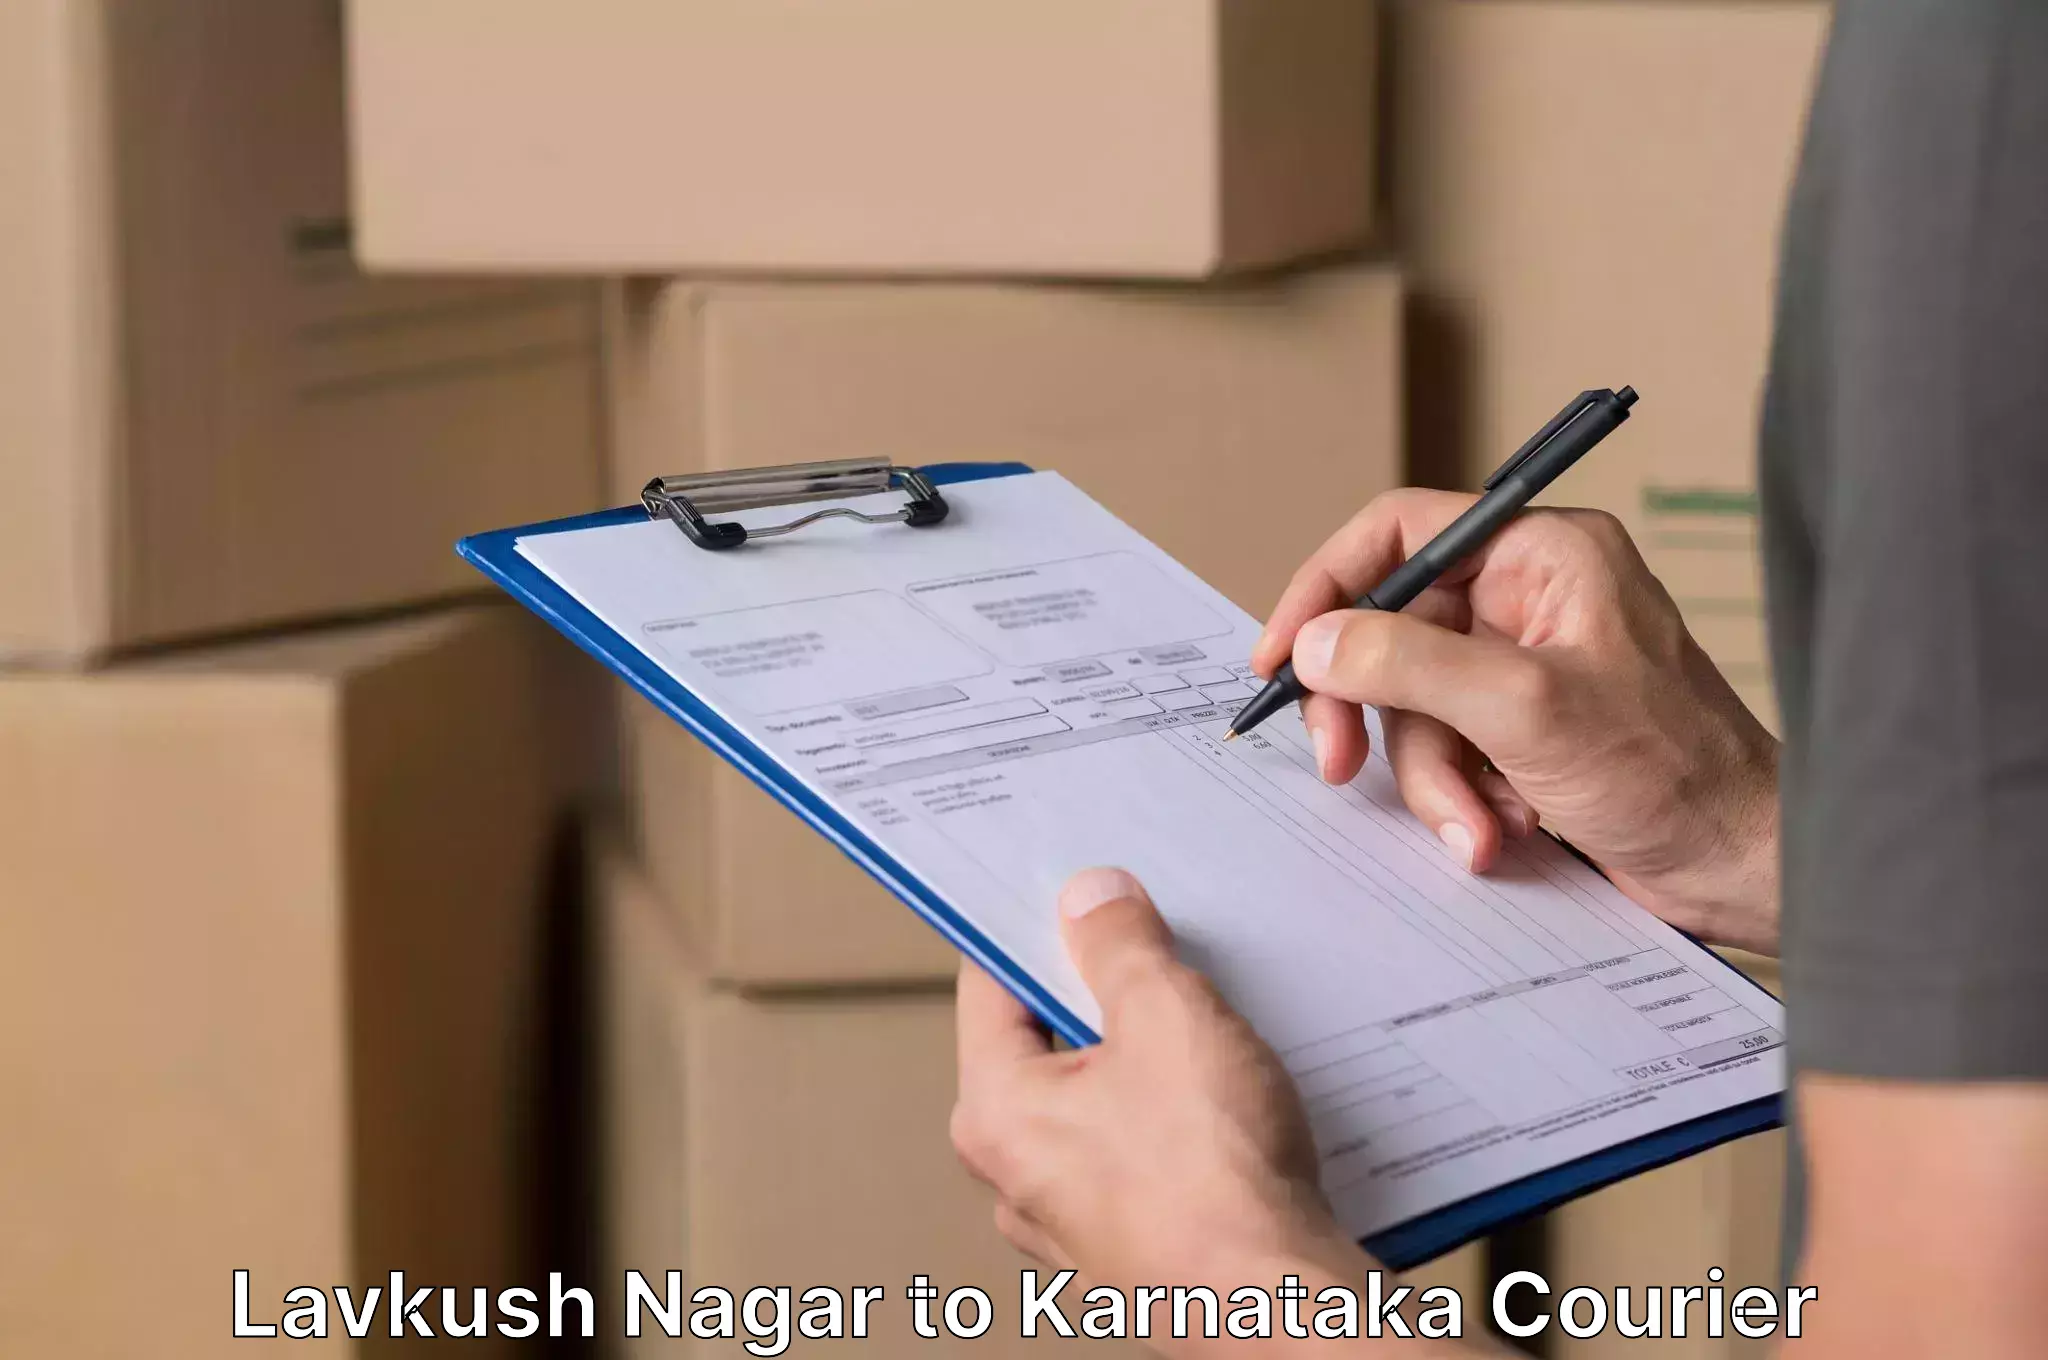 Efficient furniture movers in Lavkush Nagar to Karnataka